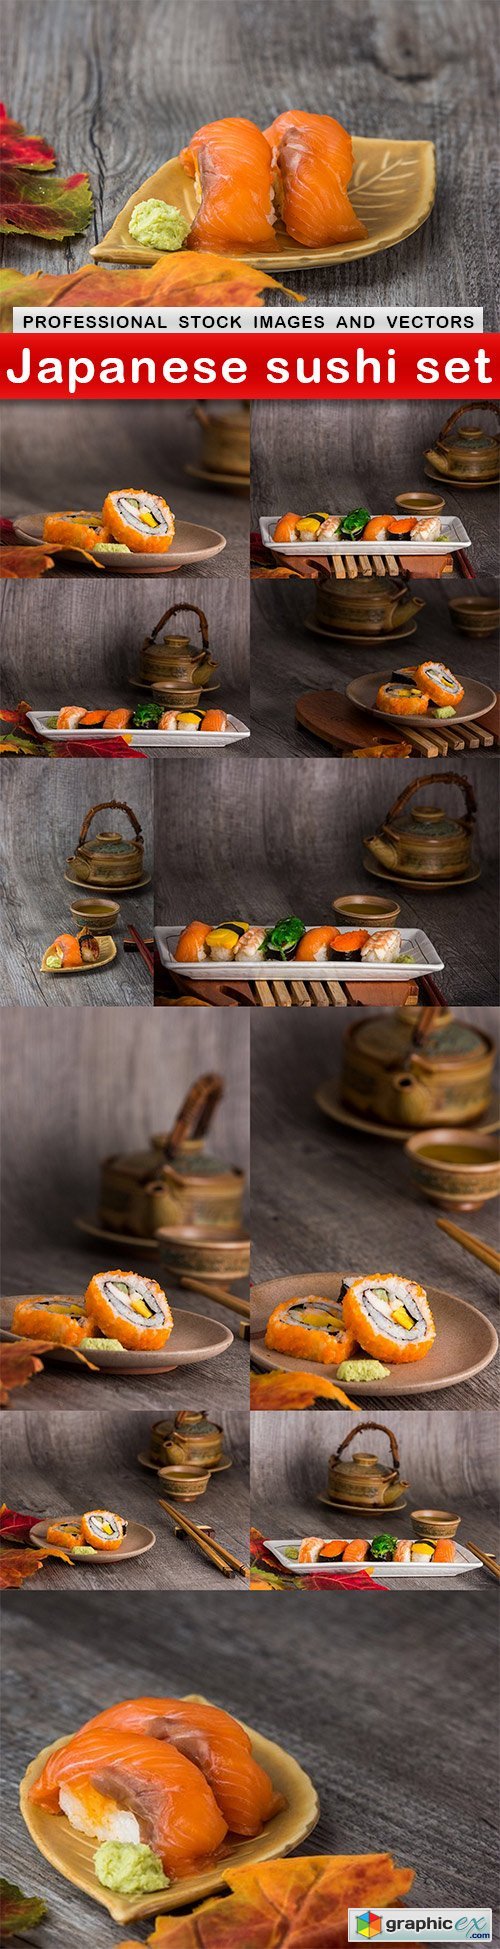 Japanese sushi set - 12 UHQ JPEG